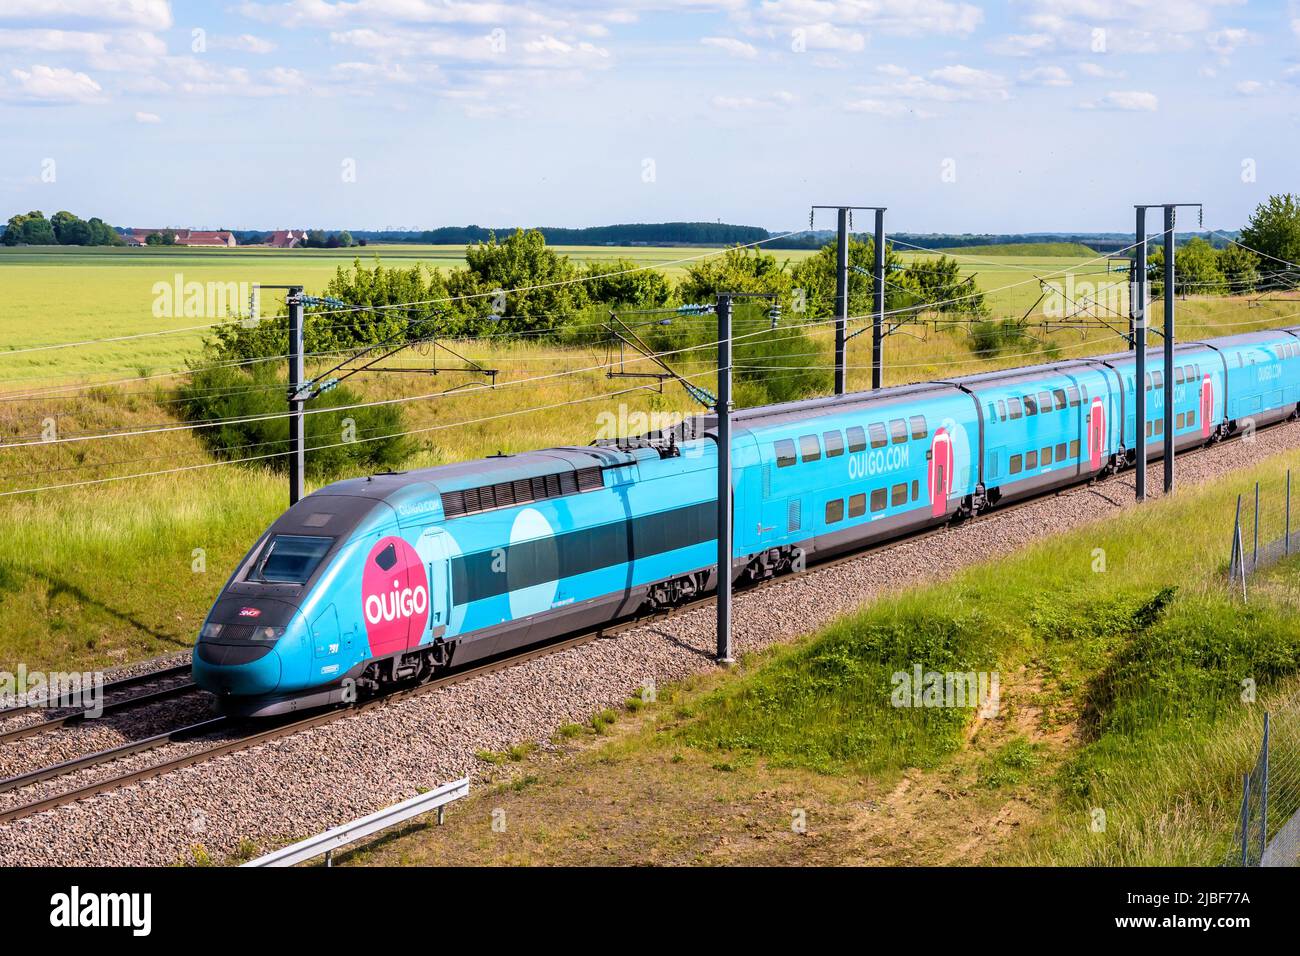 Un tren TGV Duplex Ouigo de alta velocidad de la compañía francesa de trenes SNCF está conduciendo a París en el LGV Sud-Est en el campo. Foto de stock